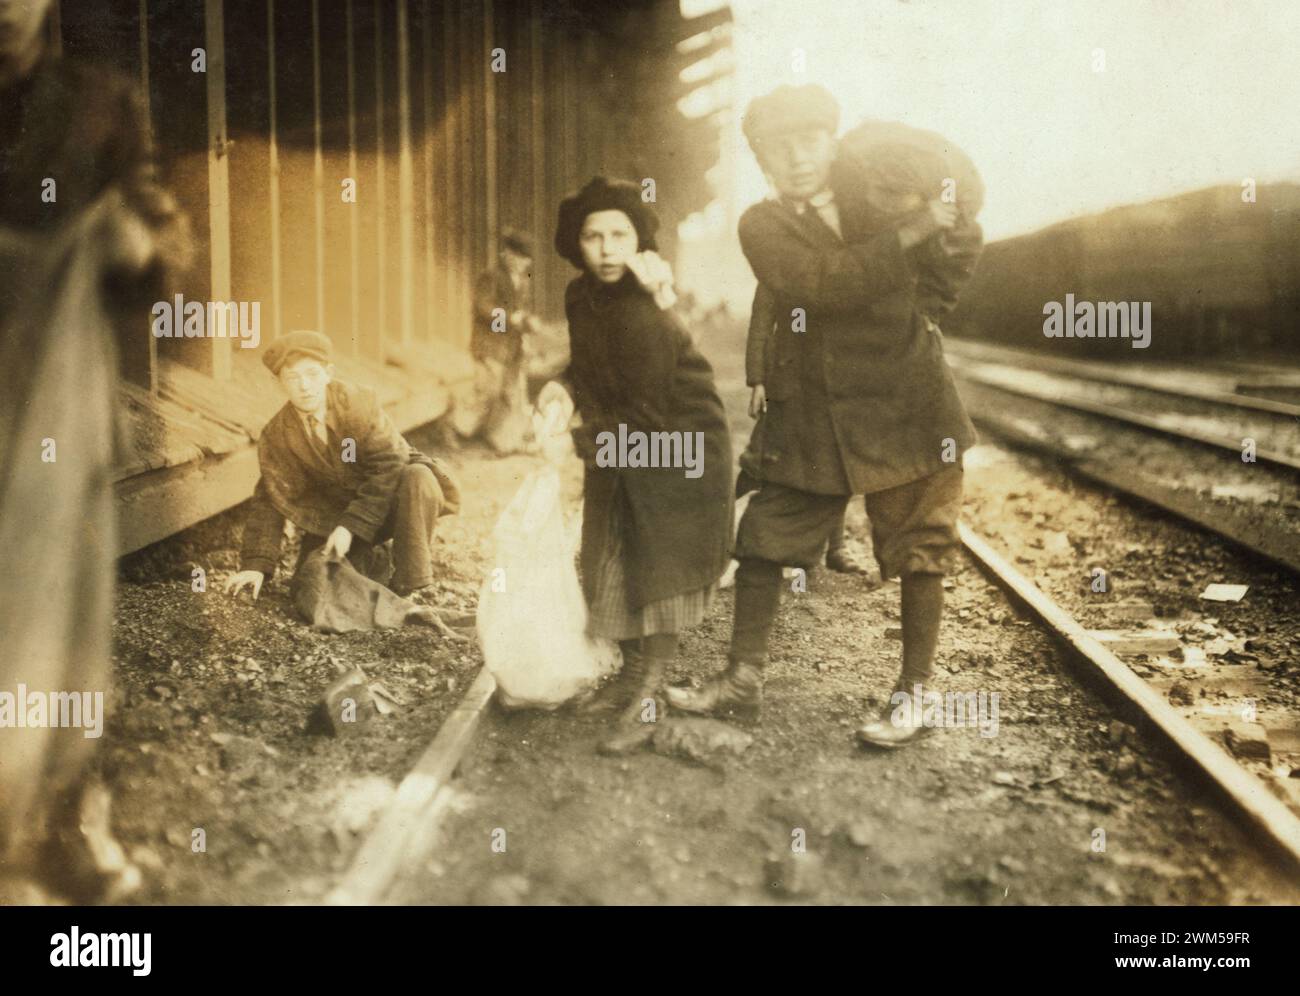 De jeunes enfants volent du charbon dans la gare ferroviaire de charbon - Boston, Massachusetts. Photo de Lewis W. Hine Banque D'Images